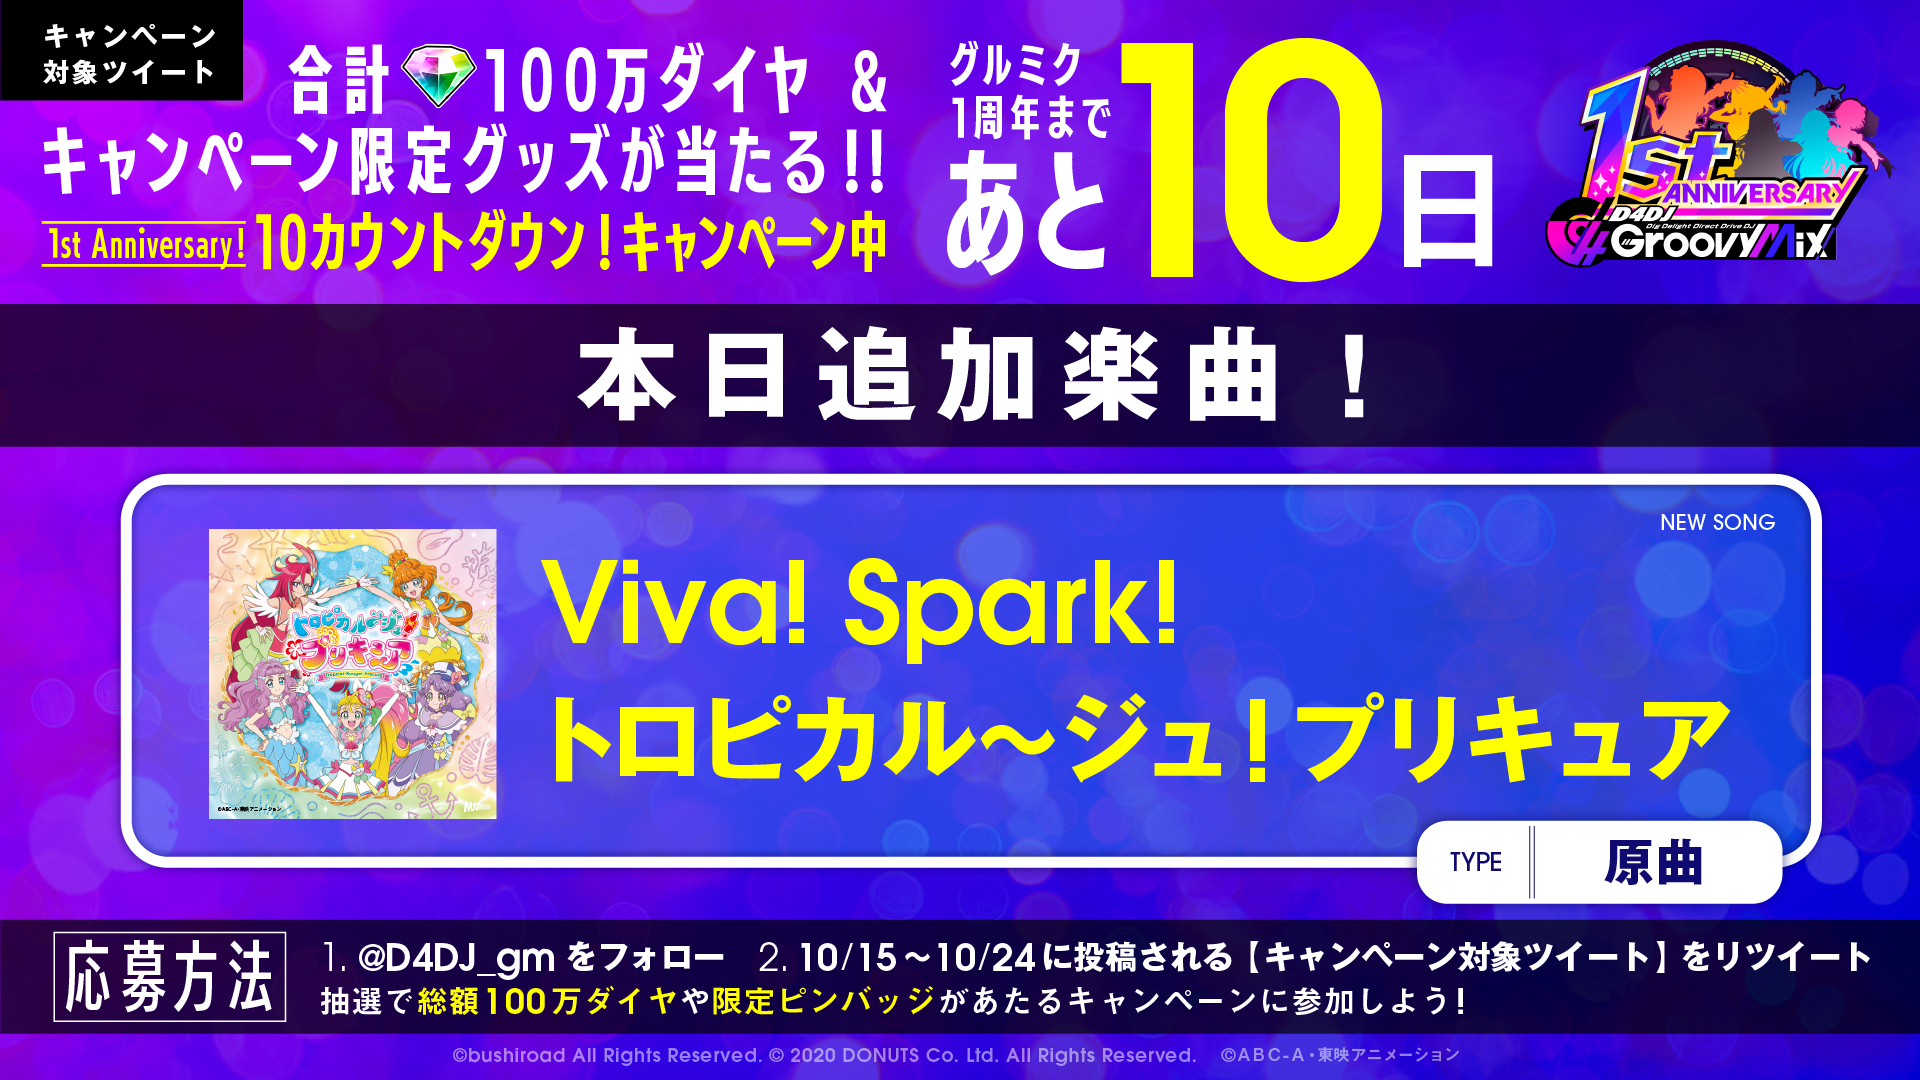 グルミクに Viva Spark トロピカル ジュ プリキュア の楽曲を原曲で実装 合計100万ダイヤが当たるキャンペーンも開催 株式会社ブシロードのプレスリリース